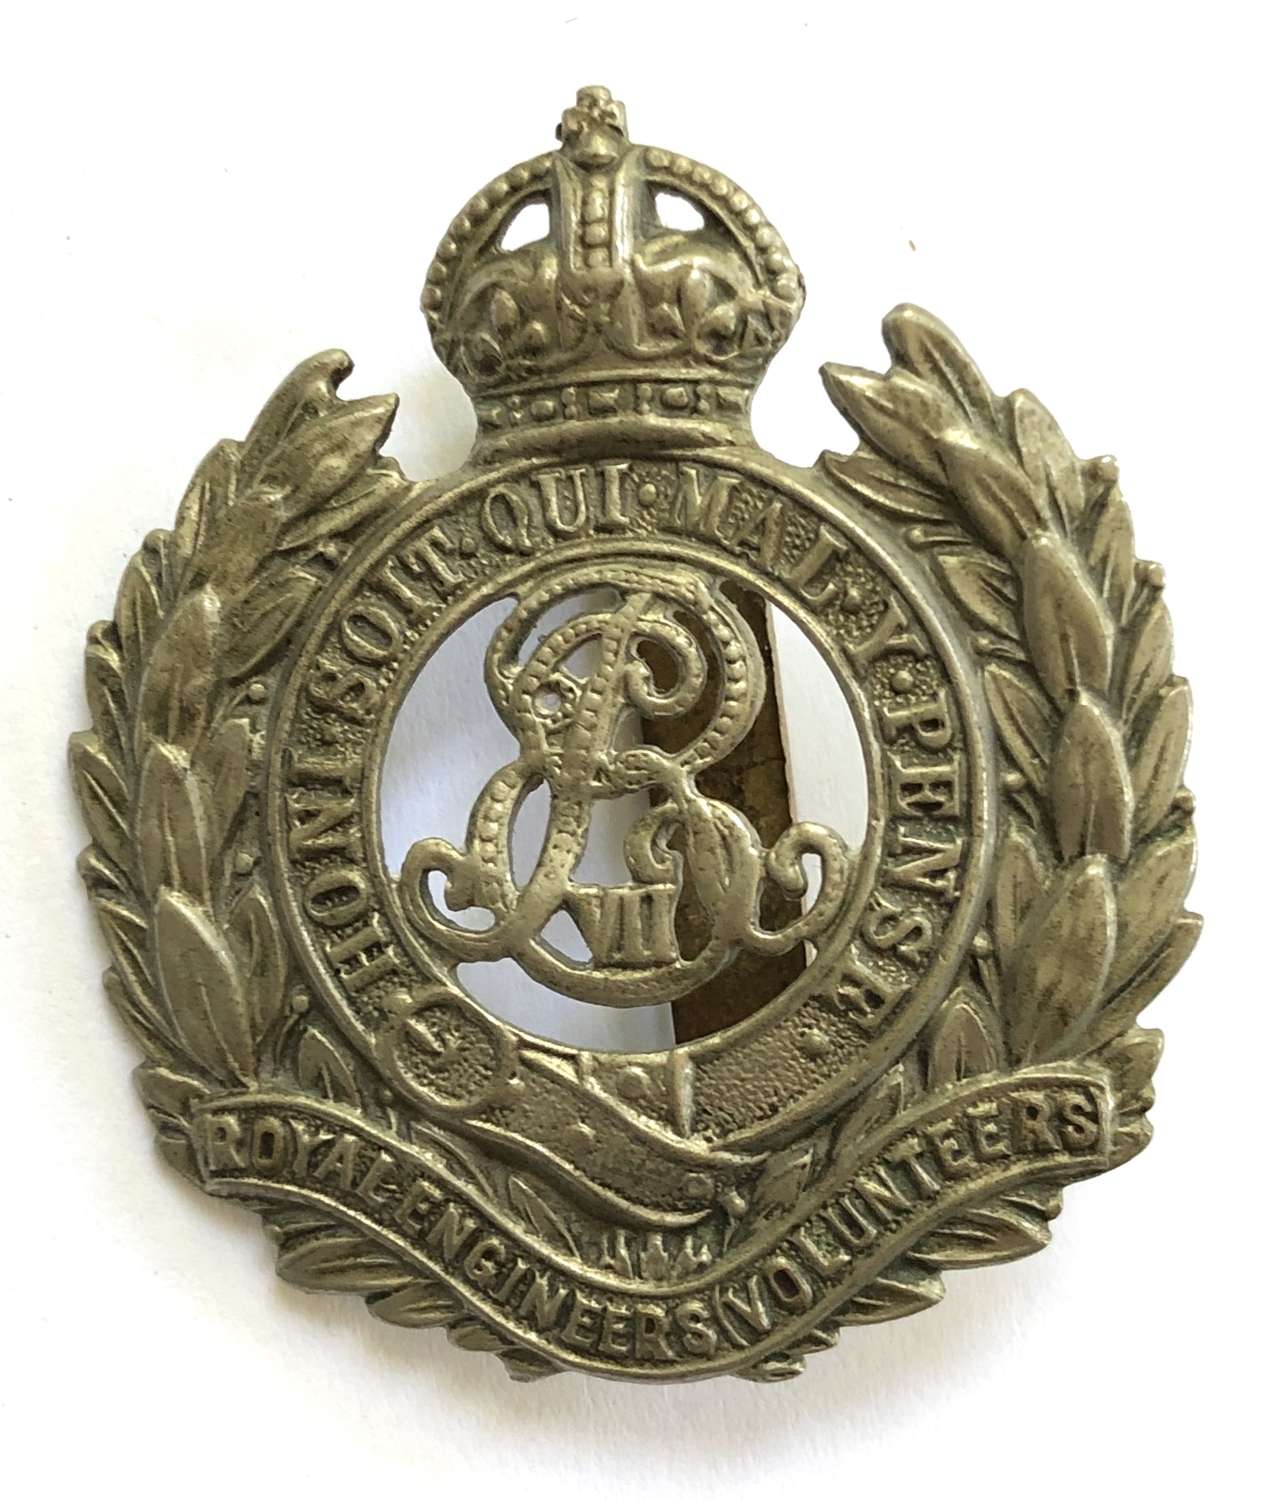 Royal Engineers (Volunteers) EdVII white metal cap badge c1901-08